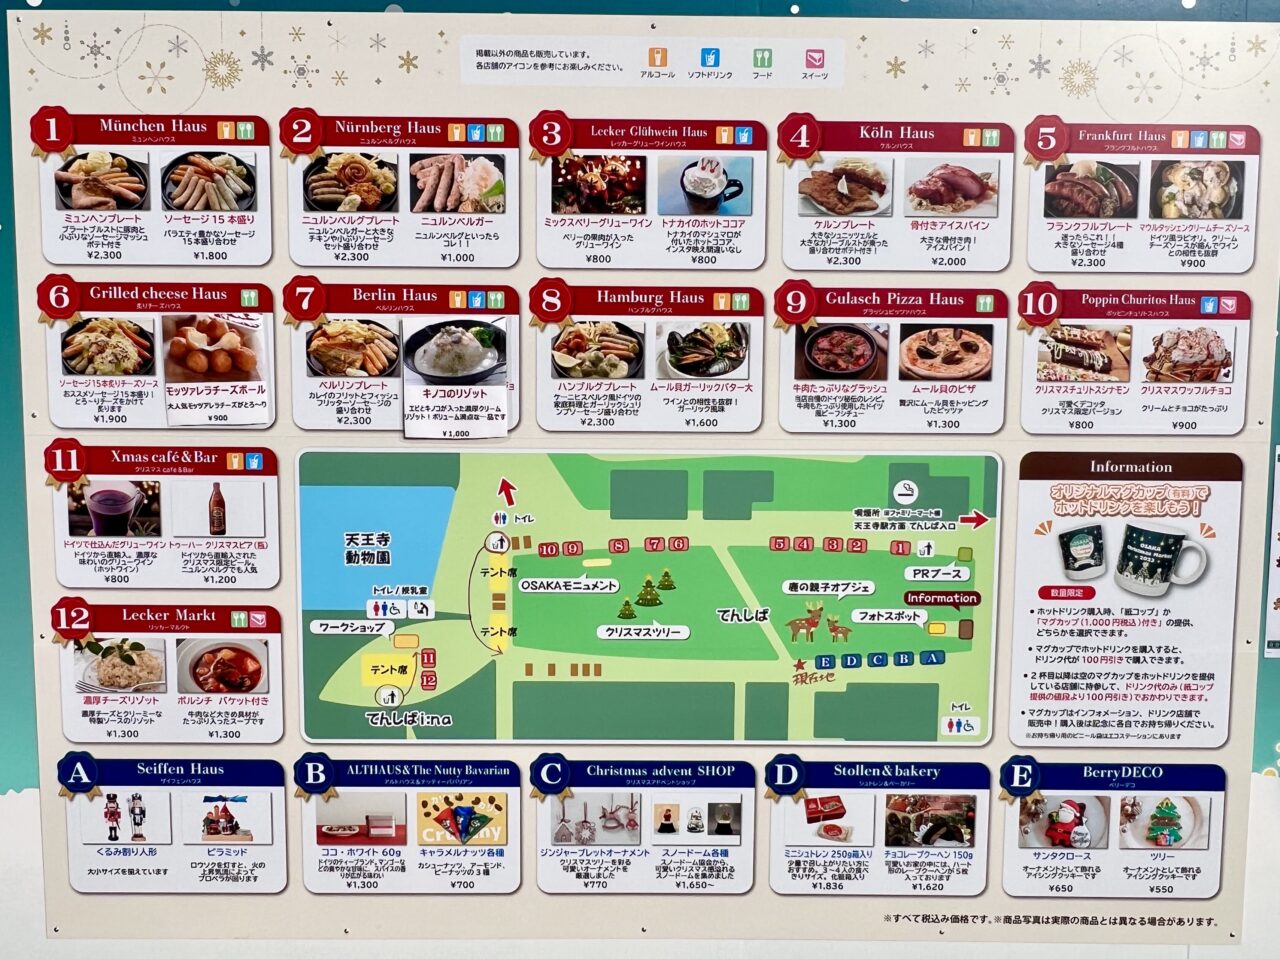 天王寺公園(てんしば)で開催されている大阪クリスマスマーケットのマップです